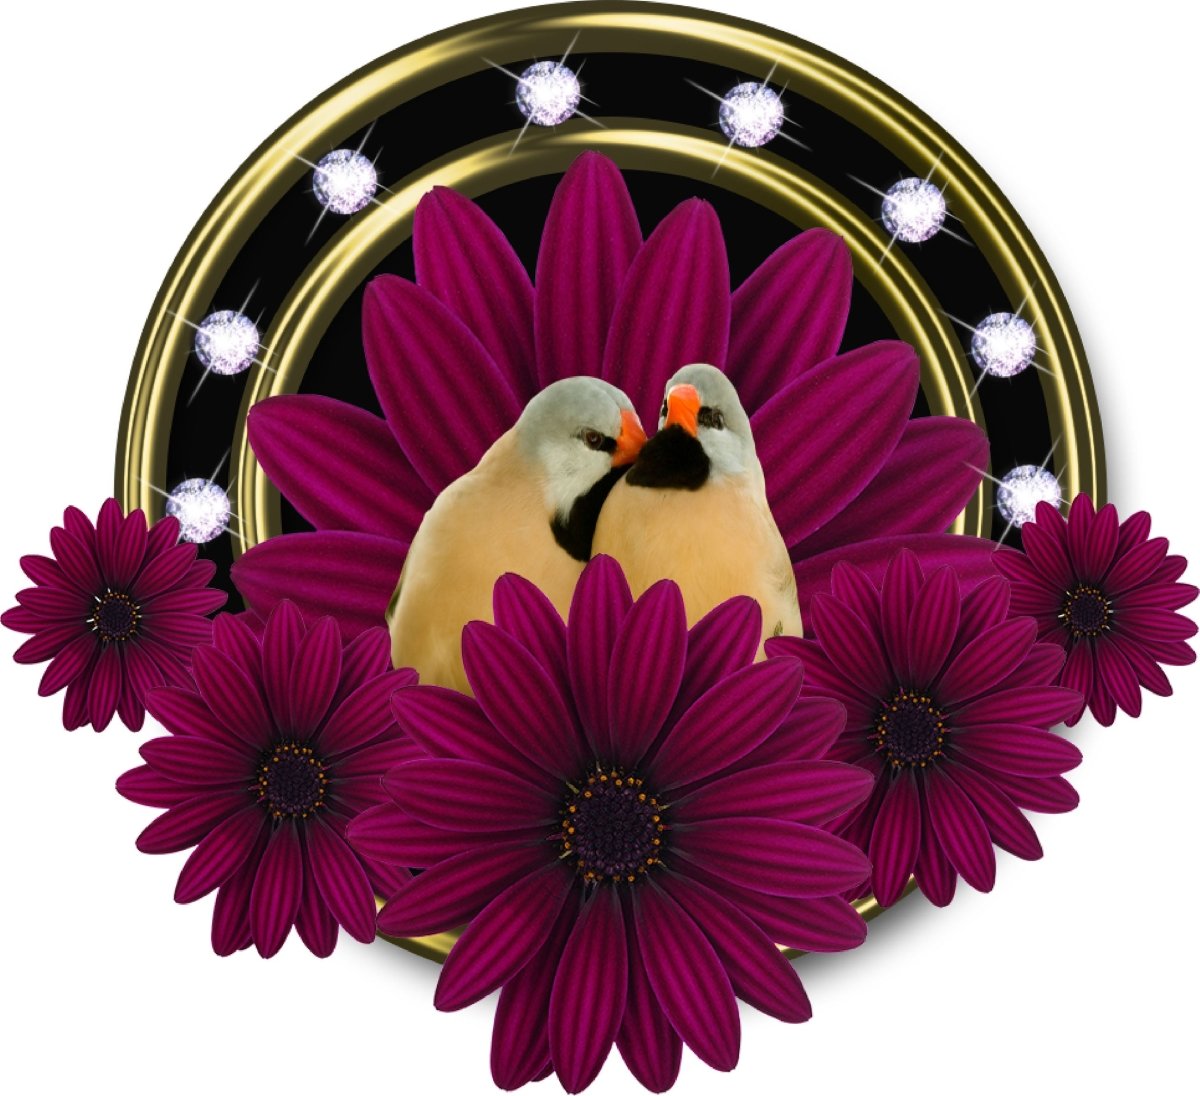 Wandsticker Verliebte Vögel in Blumen, Goldrahmen WS00000002 - Bild 4